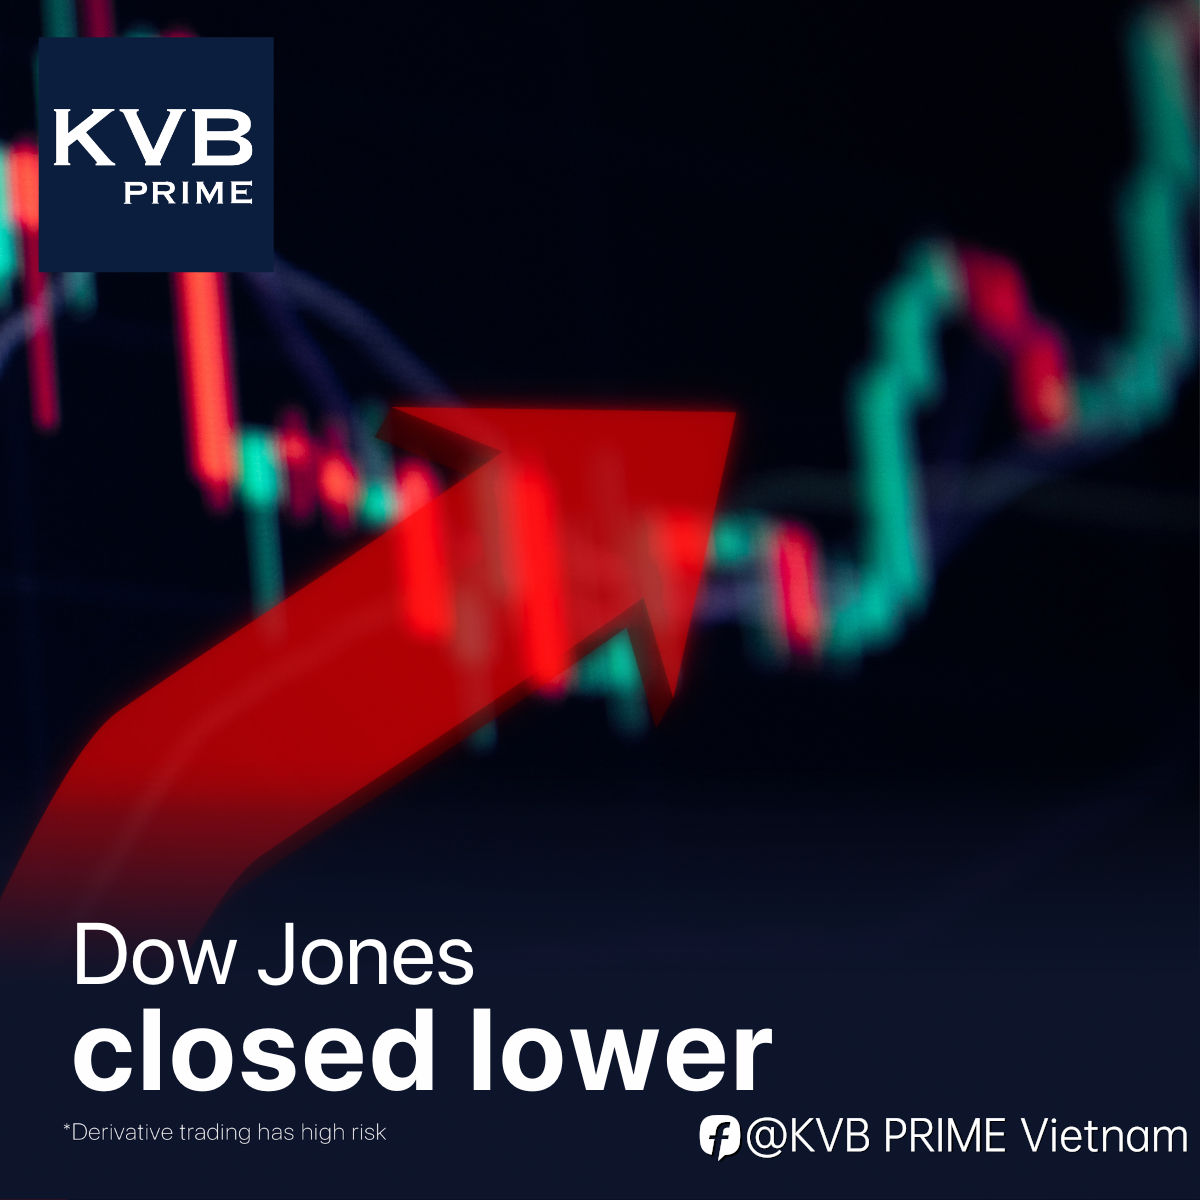 Chỉ số Dow Jones đóng cửa giảm, tỷ suất tăng do dữ liệu thị trường việc làm mạnh.